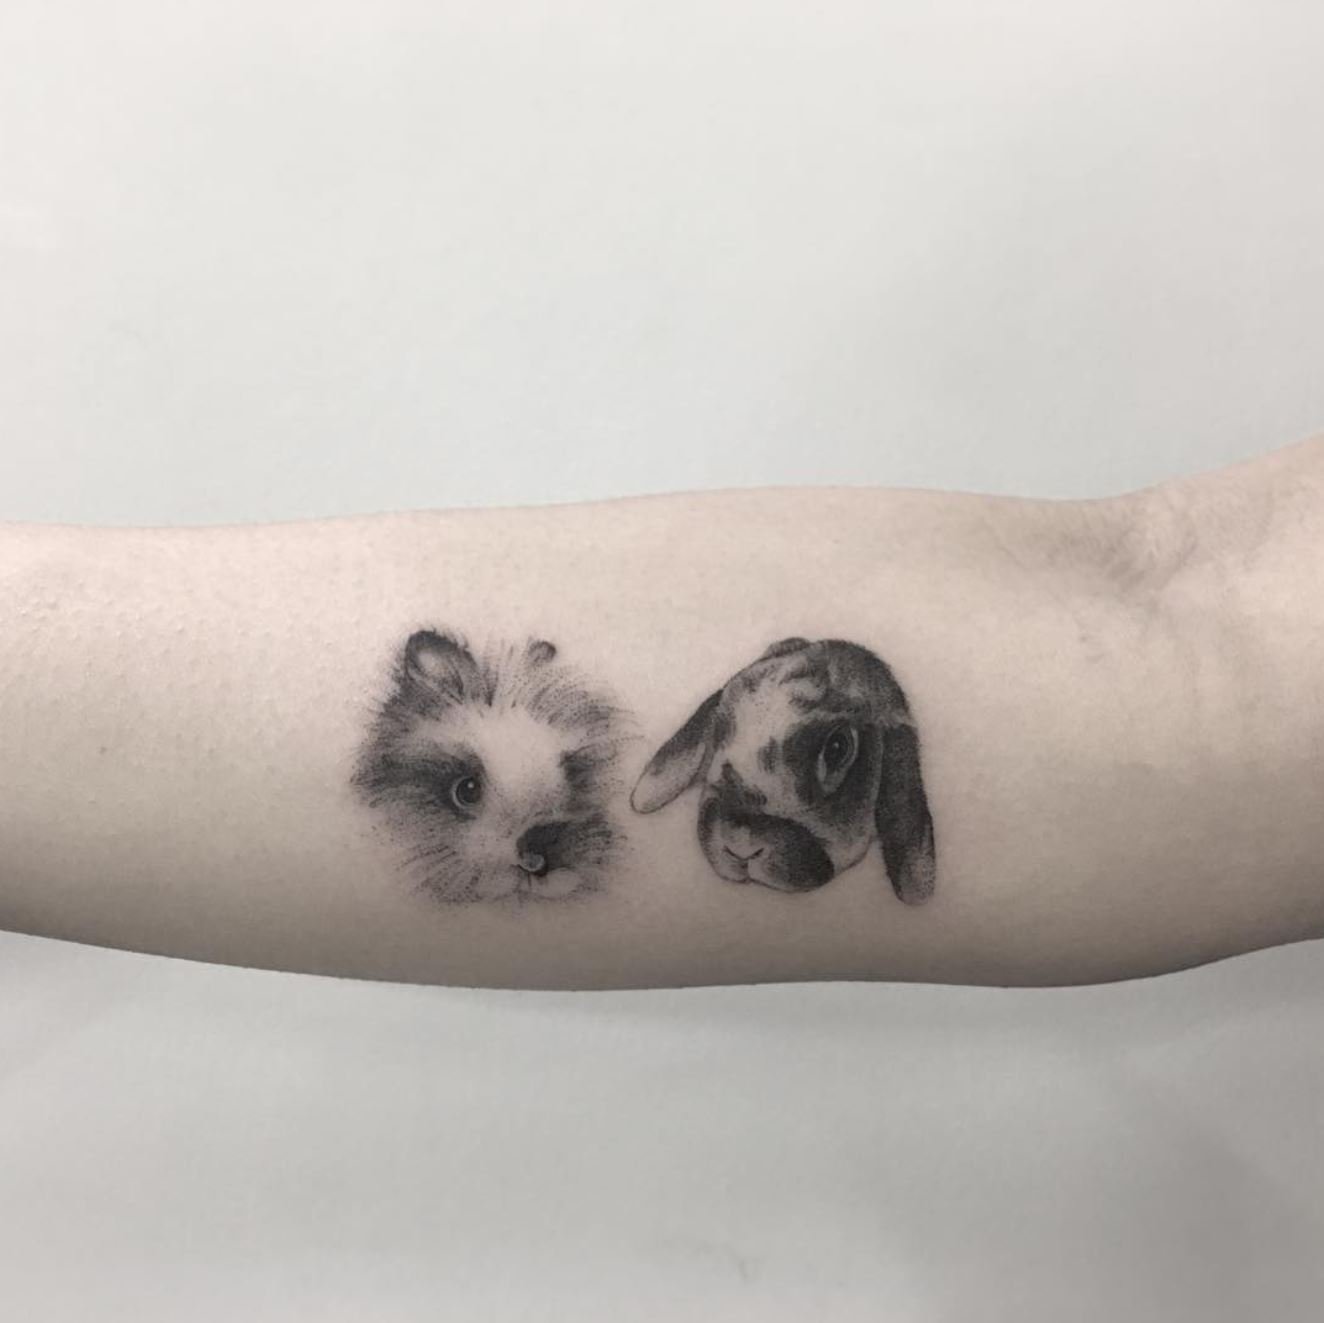 Chronic Ink Tattoos on Twitter Micro pet portraits by Zeke WorkProud  WearProud httpstcodD3RPOPwBc  Twitter